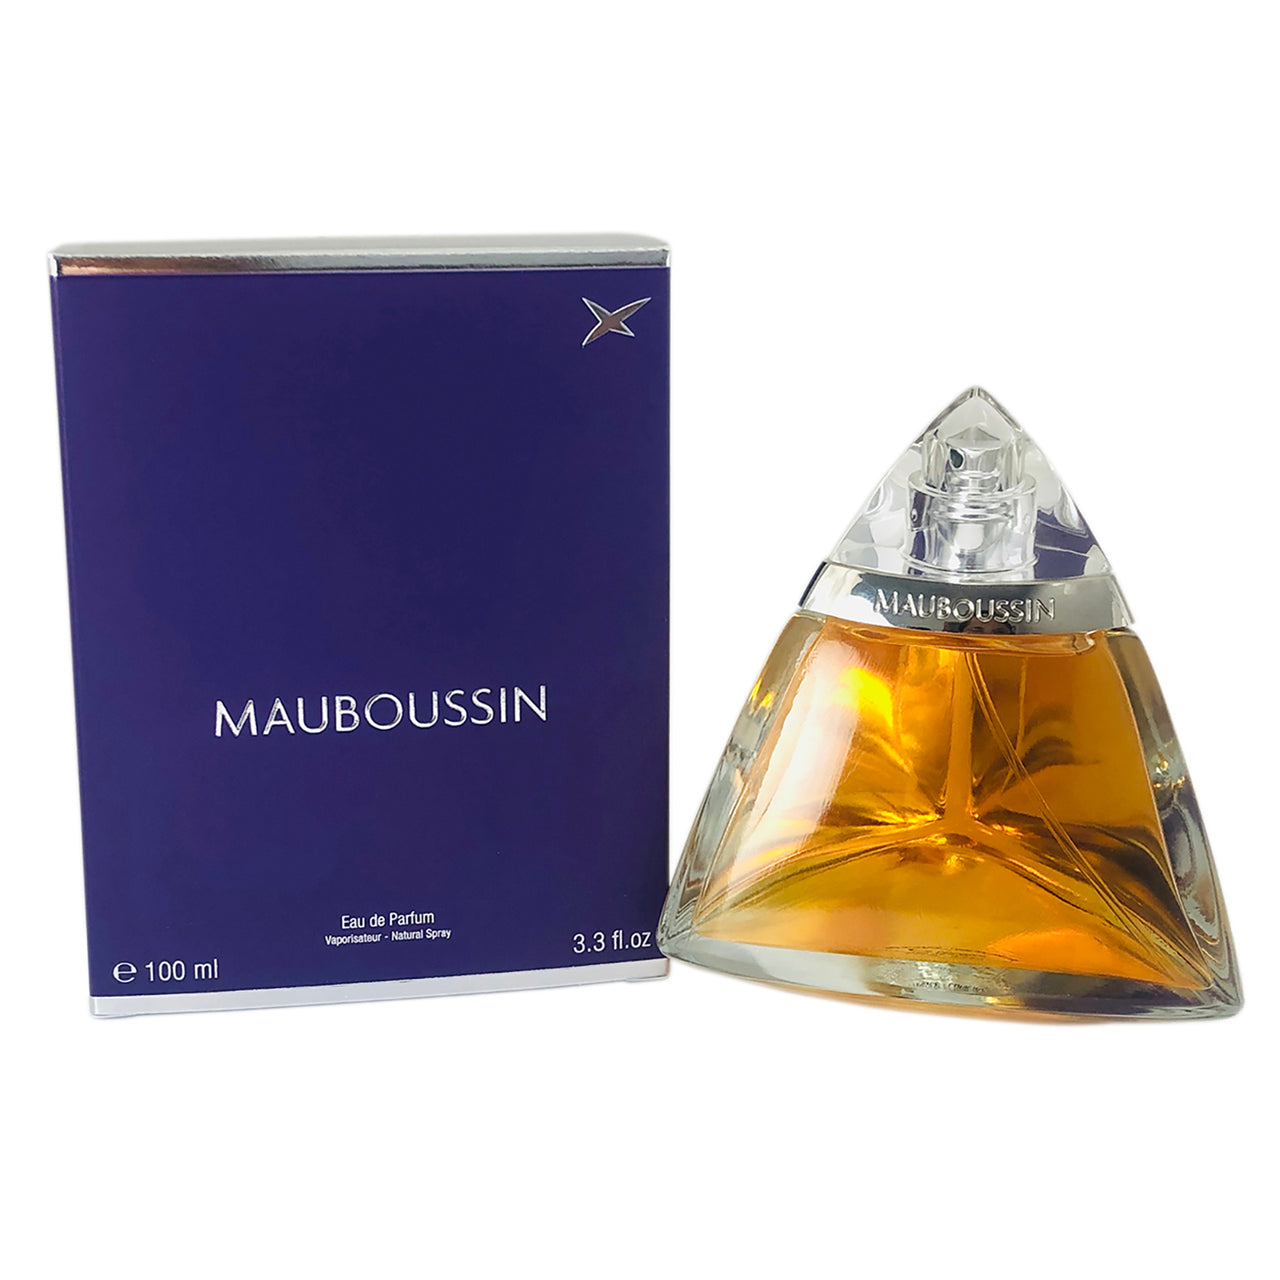 Mauboussin for Women by Mauboussin 3.3 oz Eau de Parfum Natural Spray